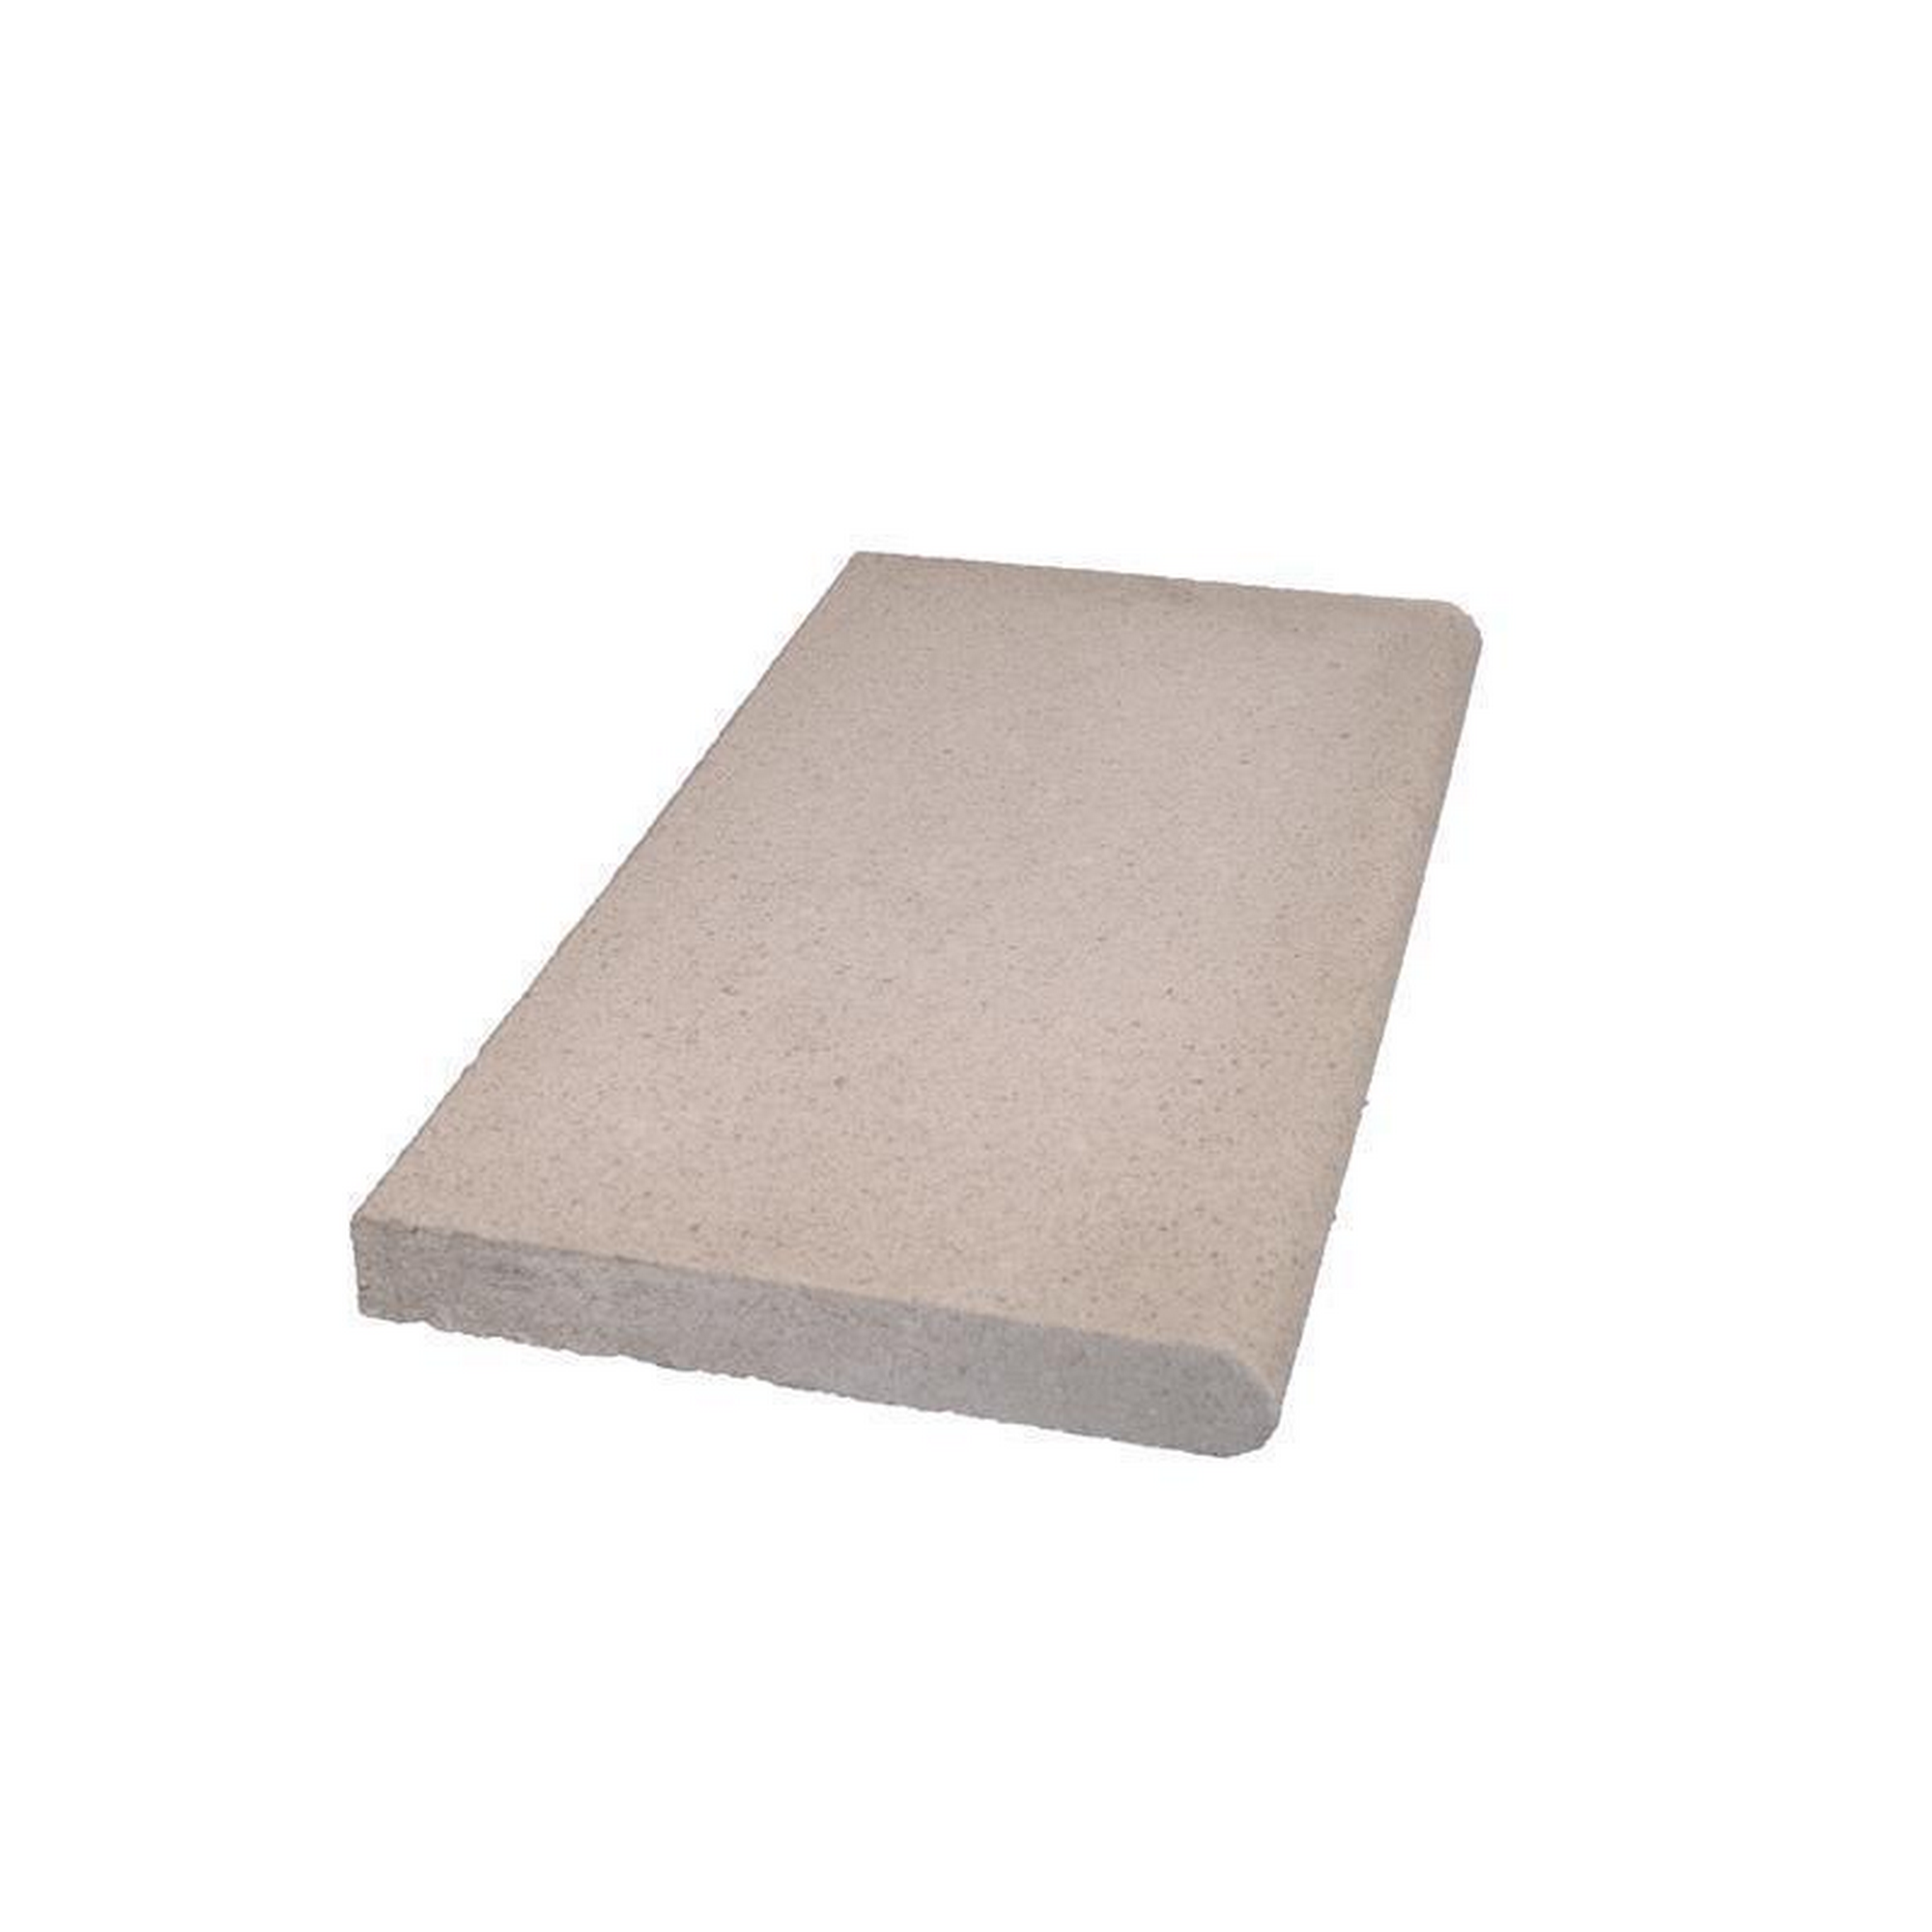 Beckenrandsteine Beton grau 600 x 300 cm für Rechteckbecken + product picture